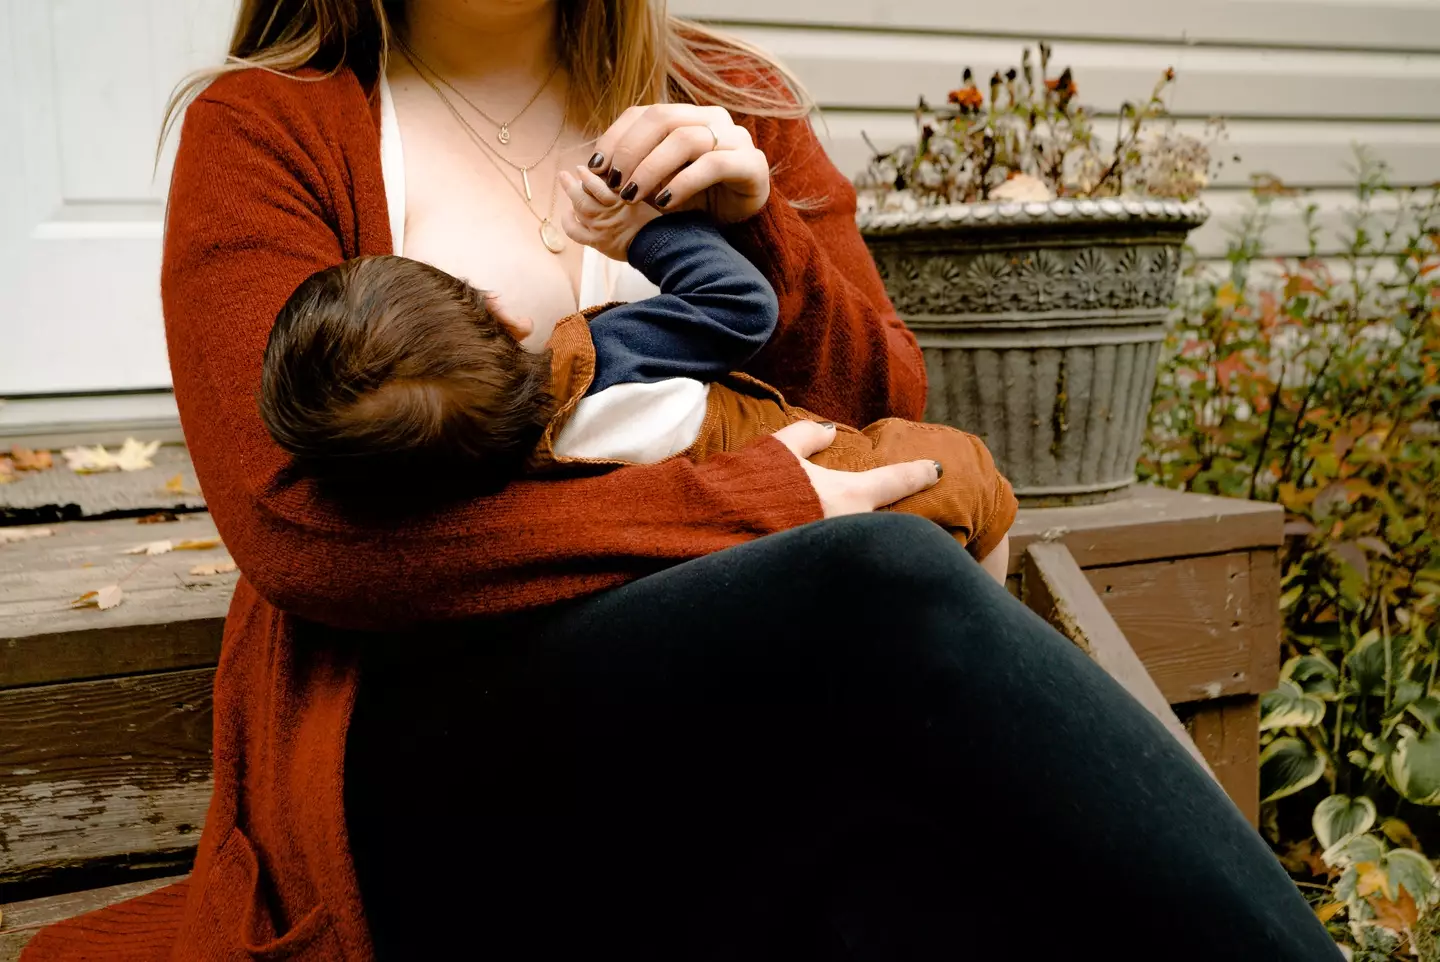 Breastfeeding in public is legal in the UK.